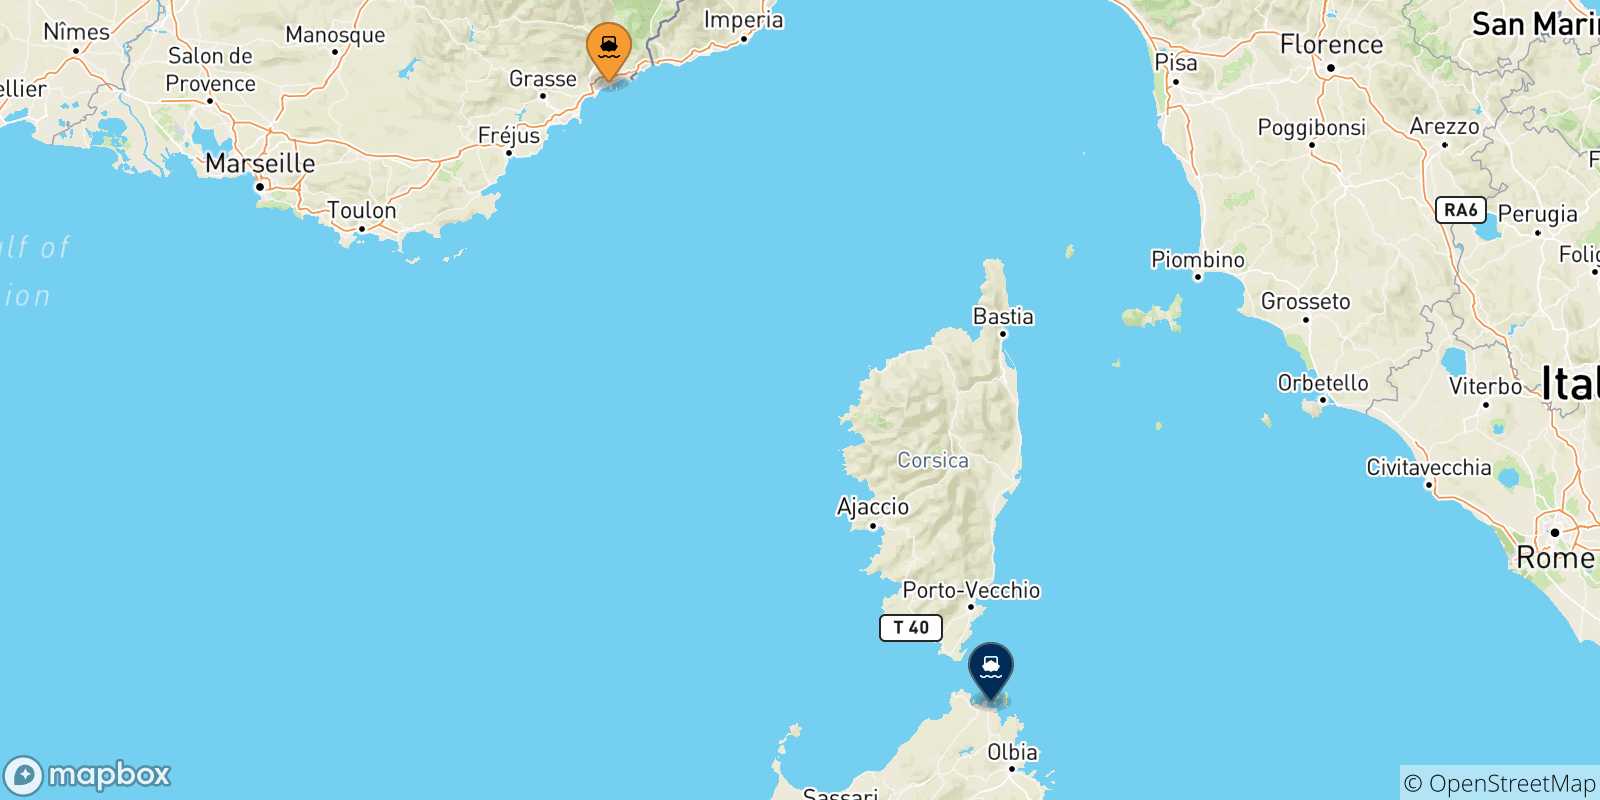 Mappa delle possibili rotte tra Nizza e la Sardegna